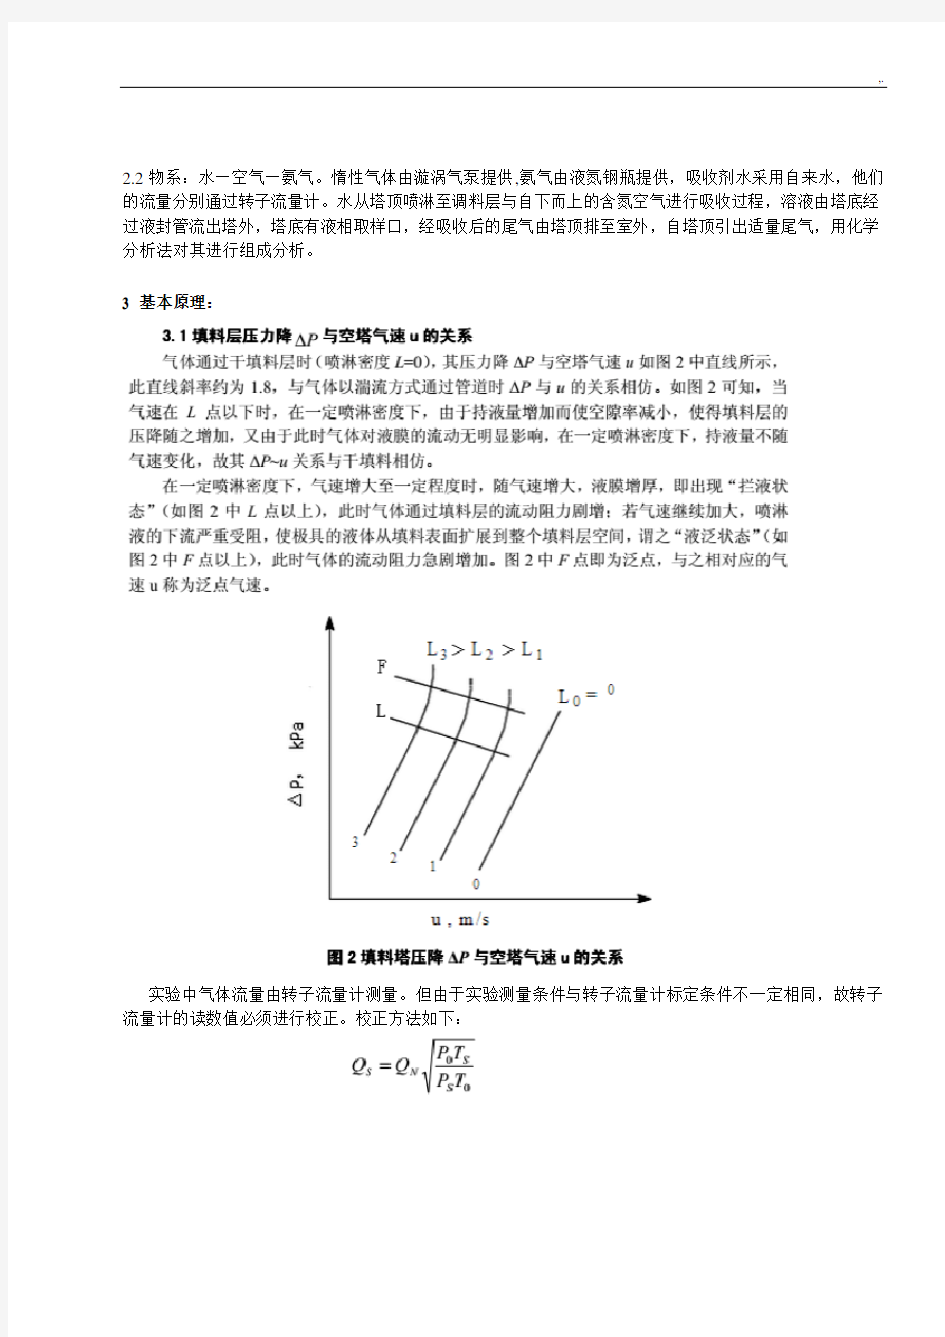 浙江大学化工基础原理实验-填料塔吸收实验报告